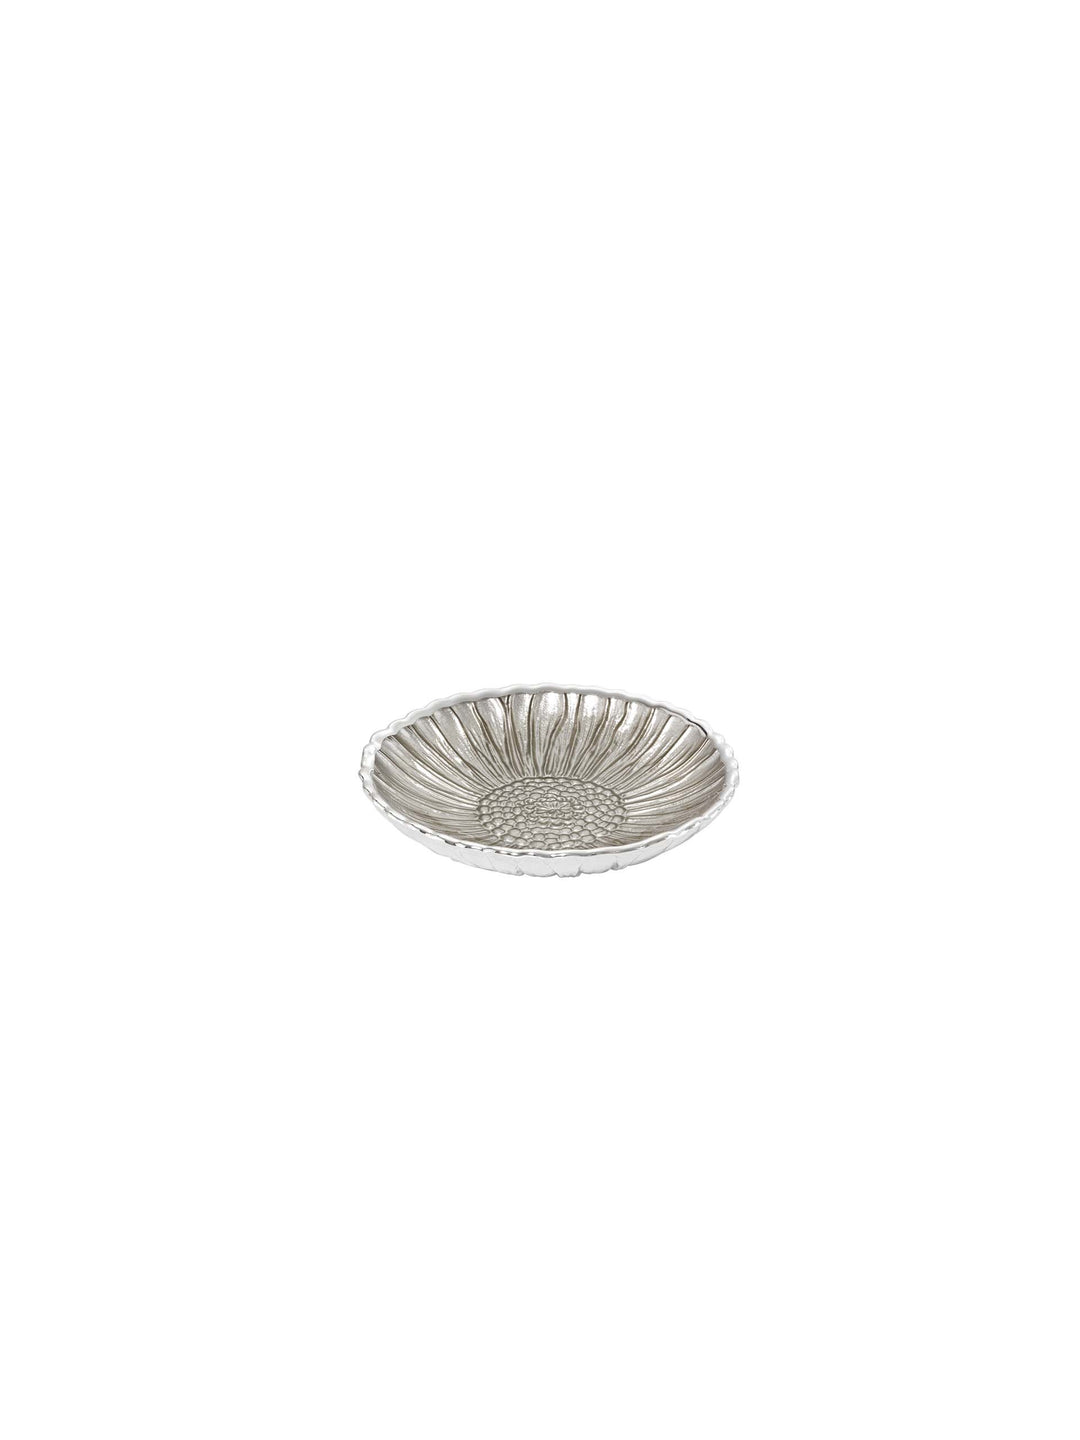 Argenesia plat de tournesol D. 14cm argent verre de sable 0.02039